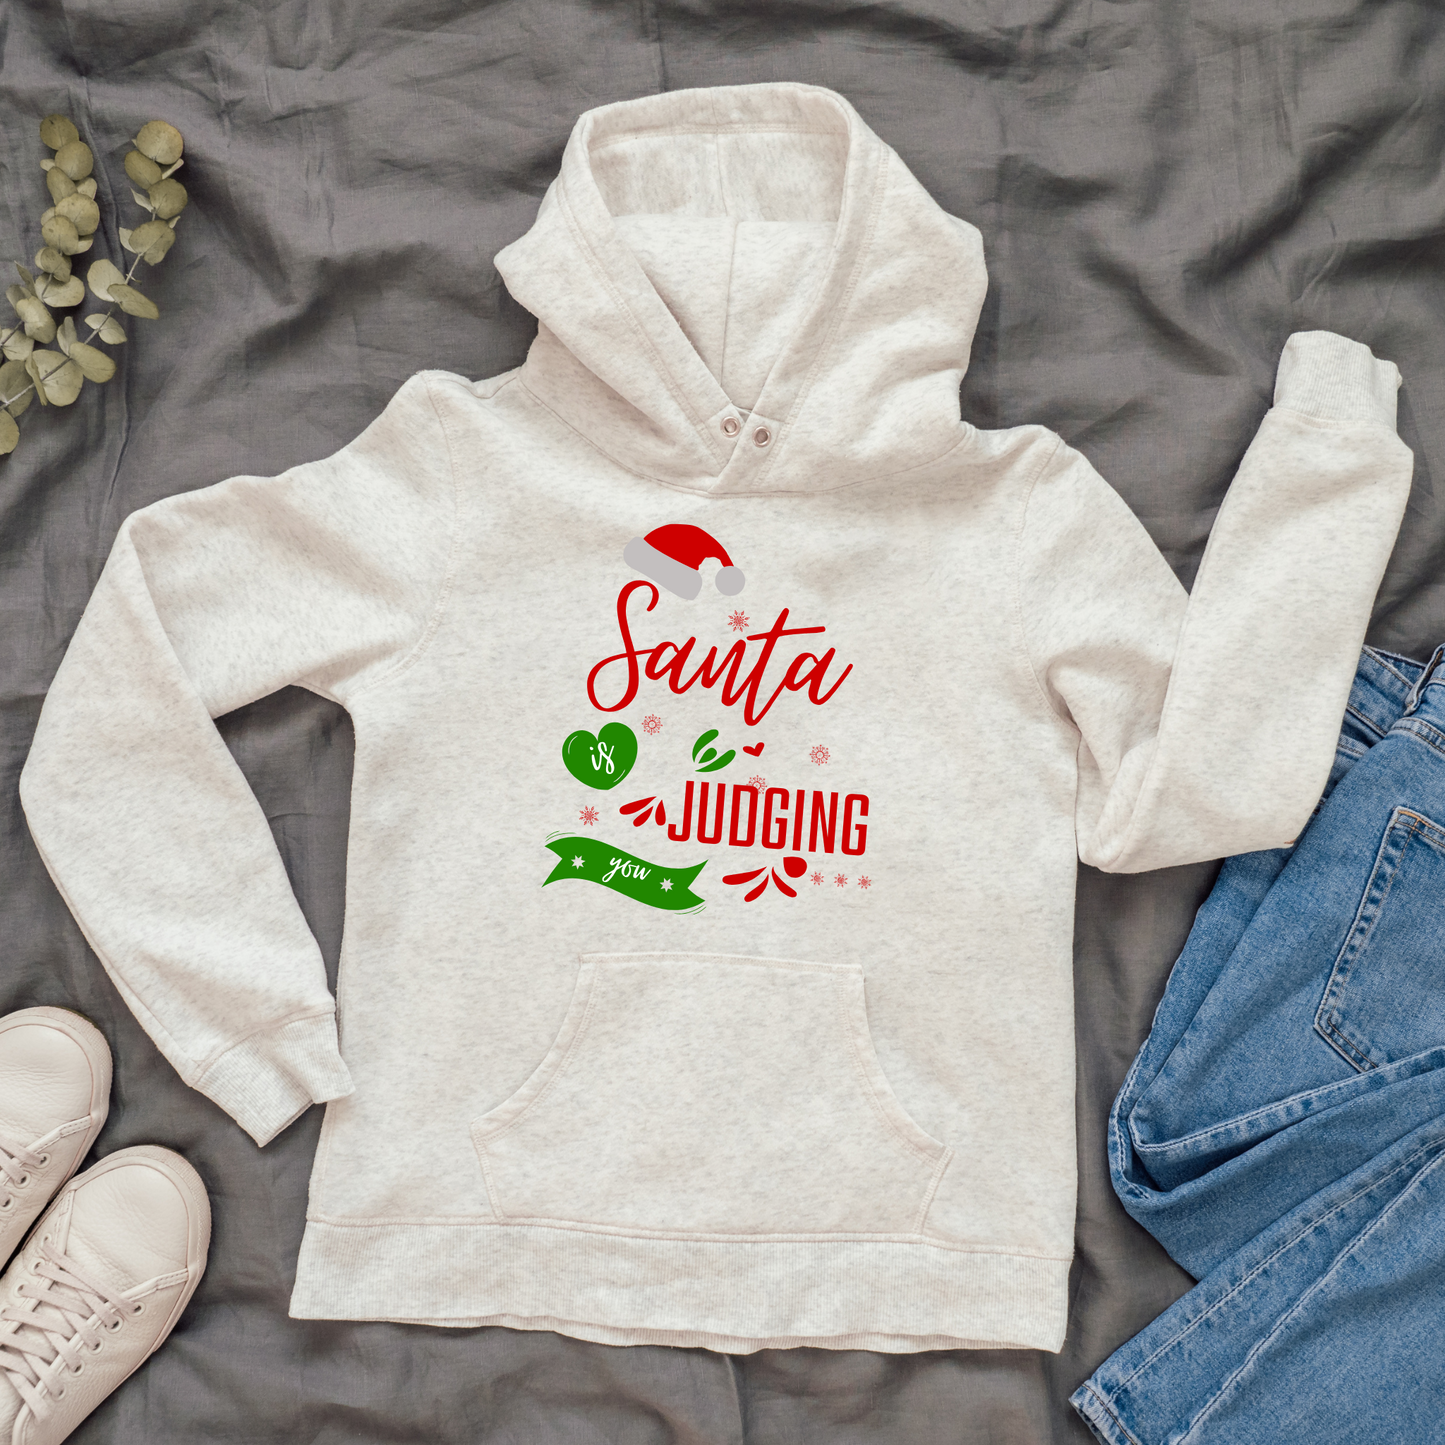 Santa is judging you funny Girls Christmas hoodie - Premium Hoodie from Lees Krazy Teez - Just $39.95! Shop now at Lees Krazy Teez